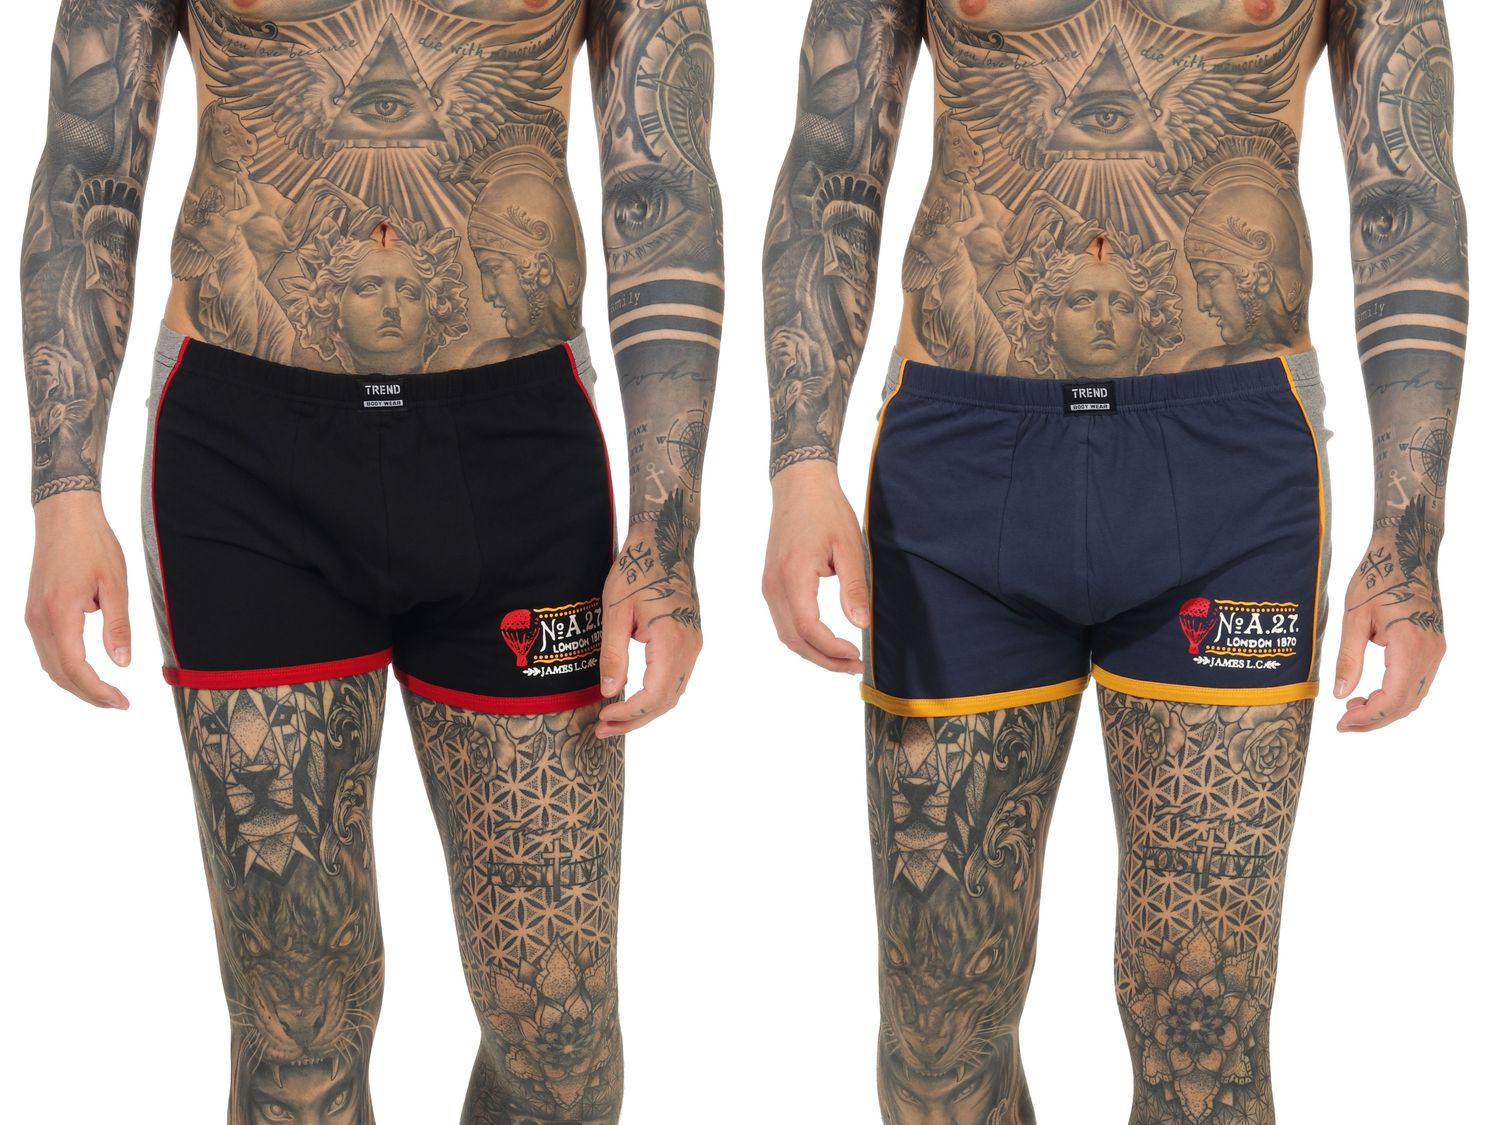 Herren Unterhosen, Retro Pants - 2er Pack in sportlichem Design - 65722_44413210106